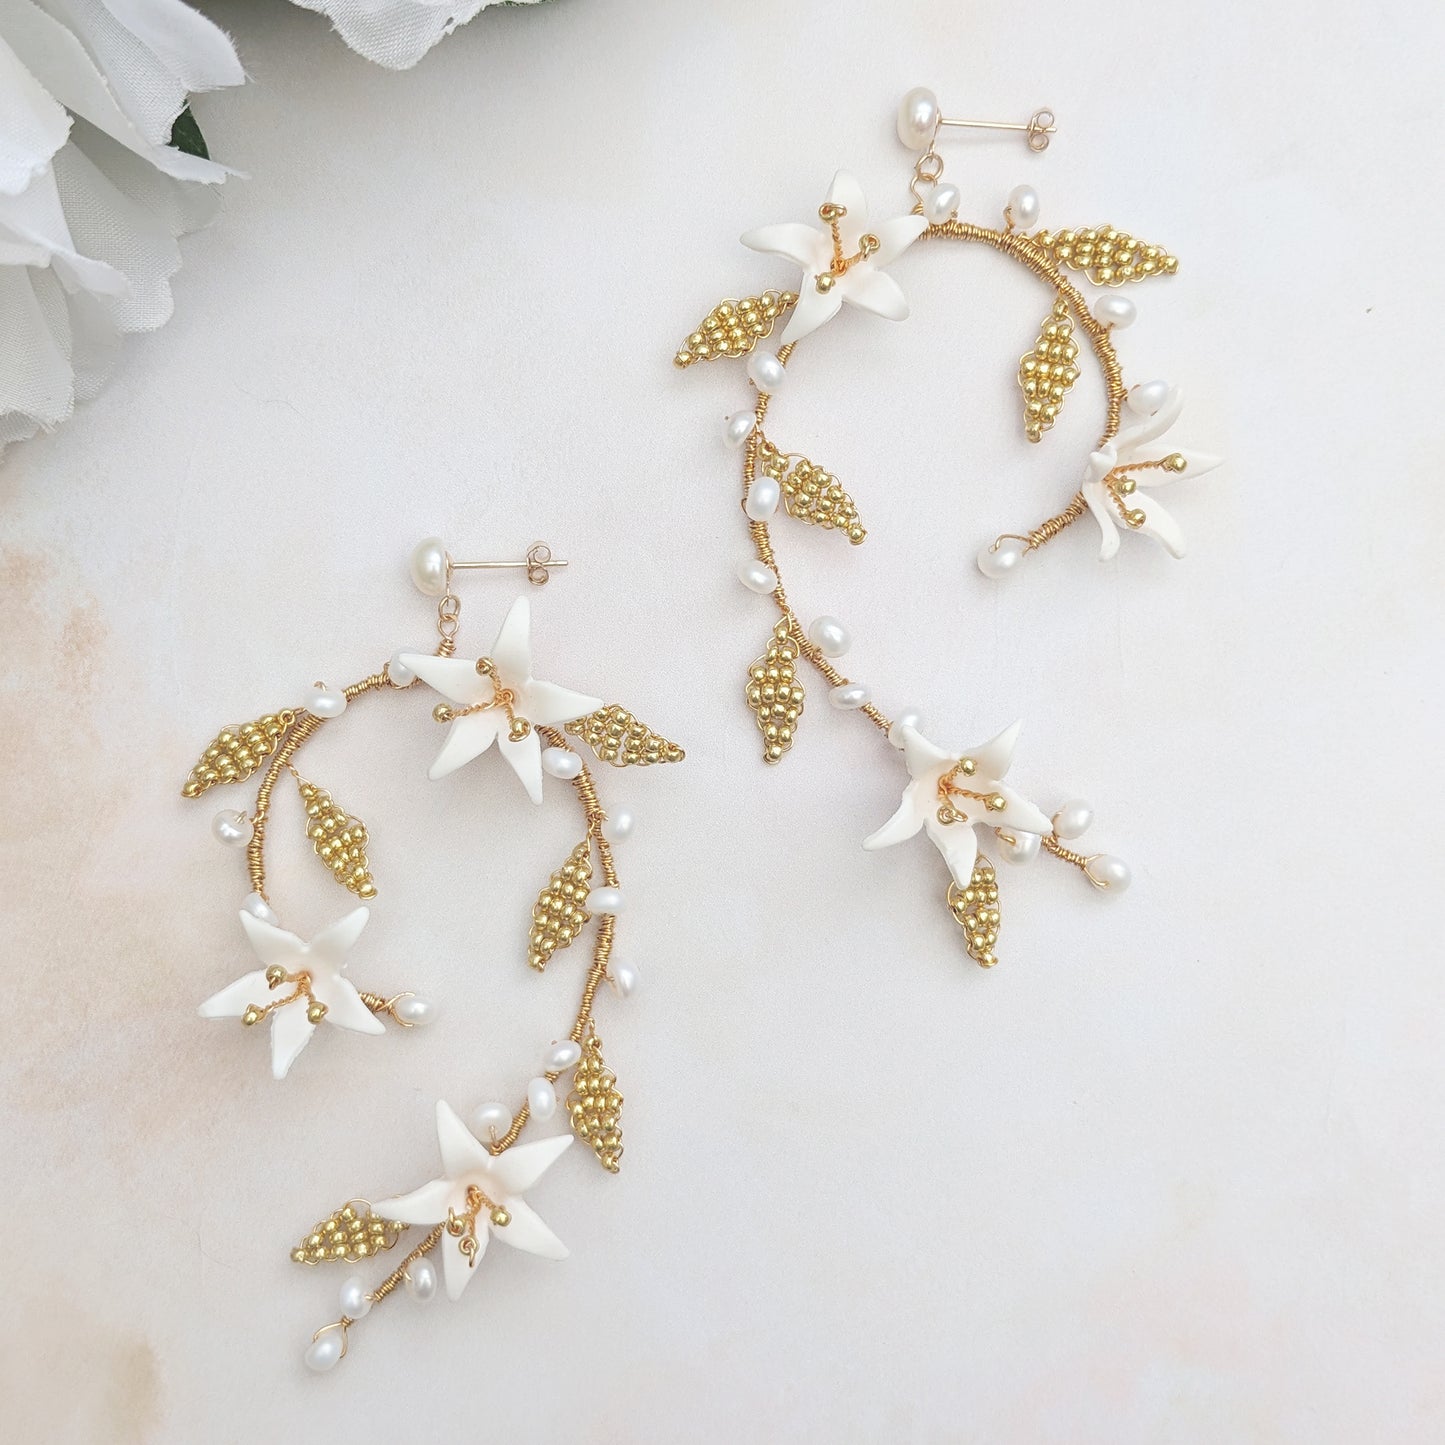 Modern floral wedding earrings for brides - Susie Warner